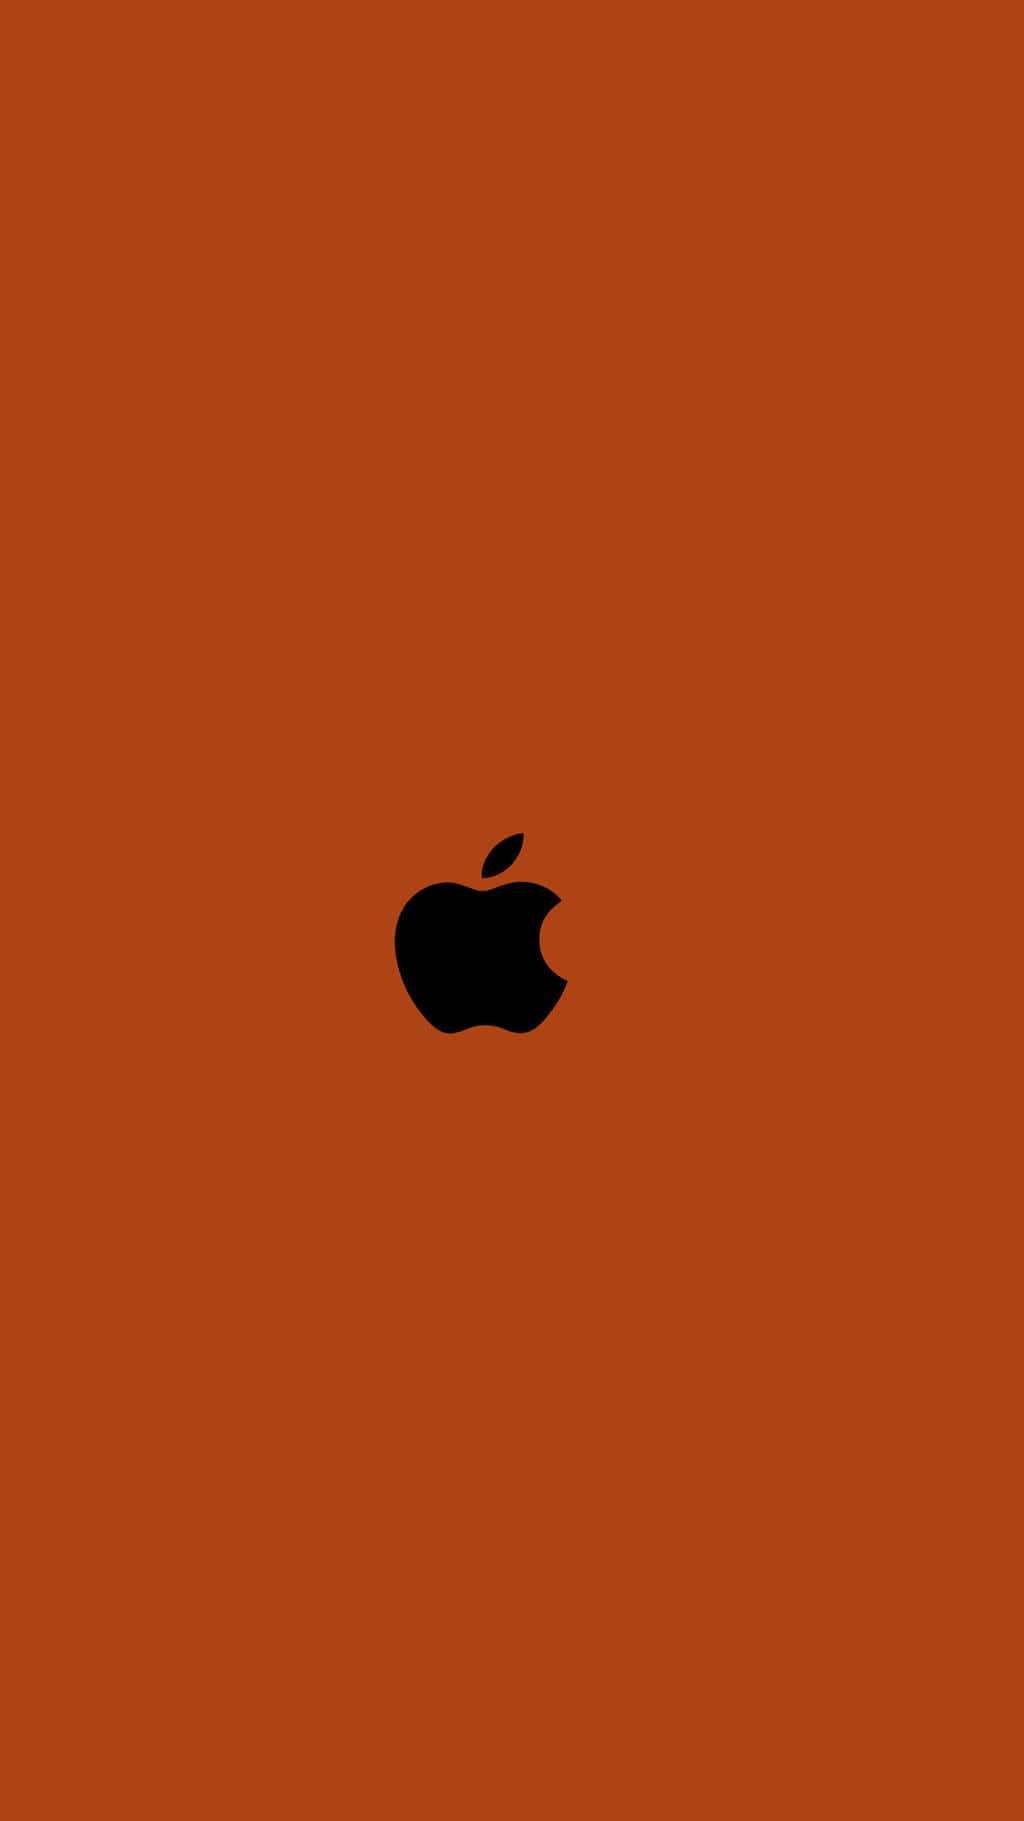 Verbrannterorangen Hintergrund Apple-logo